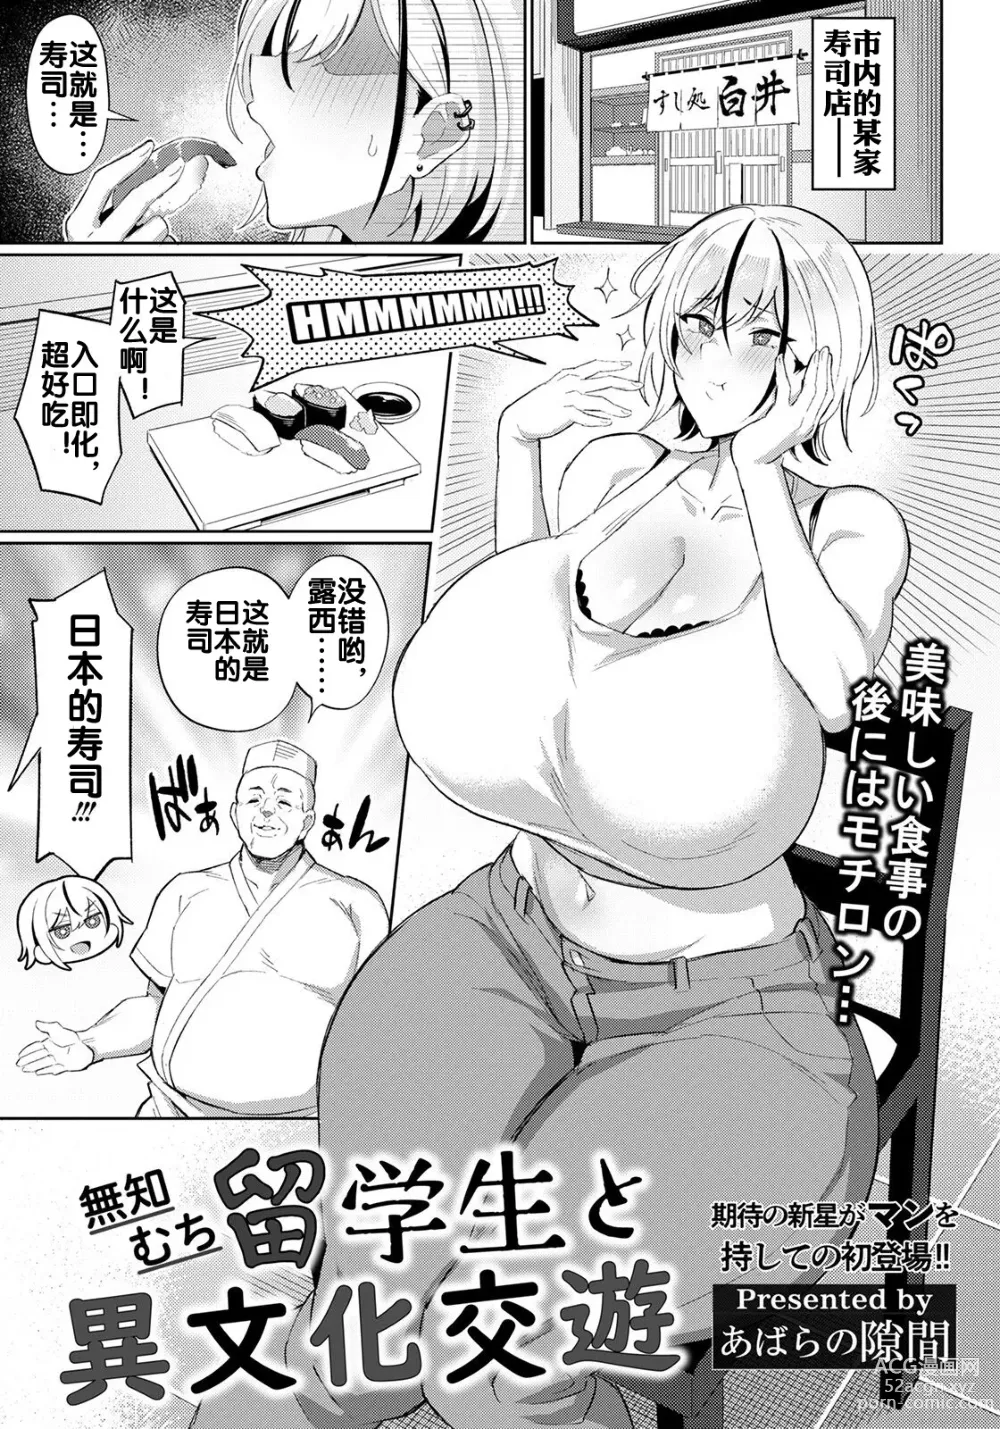 Page 2 of manga Muchimuchi Ryuugakusei to Ibunka Kouyuu